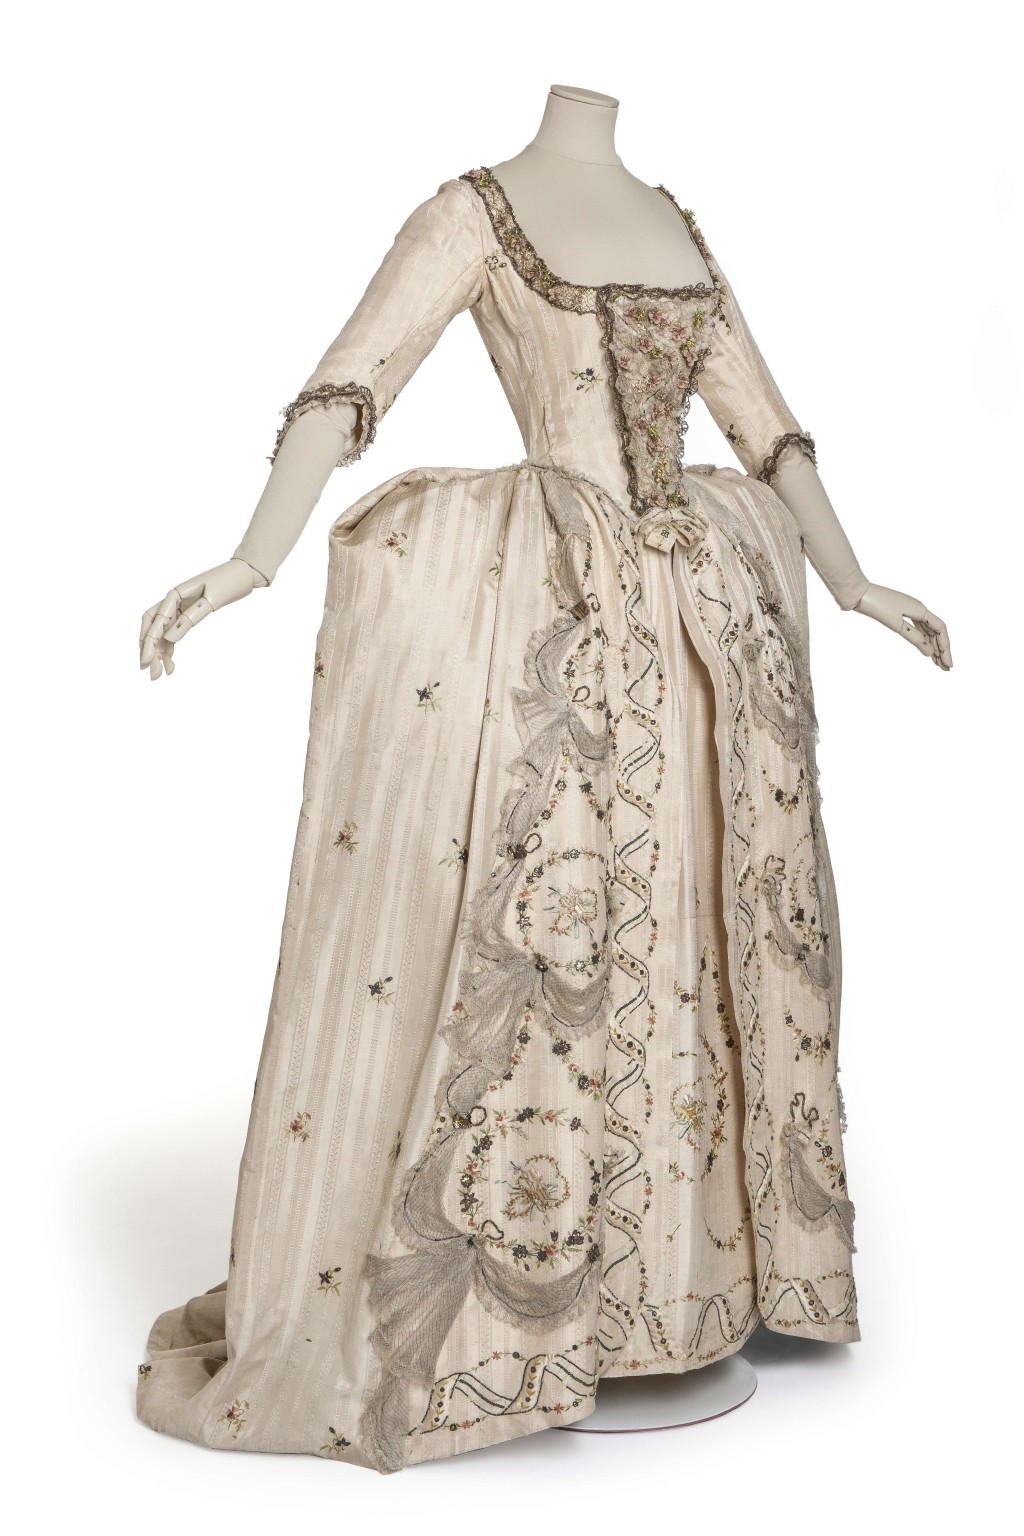 宮廷禮服(禮服外袍、長裙、三角胸衣)© 巴黎裝飾 藝術博物館 / 攝影:尚 · 托朗斯